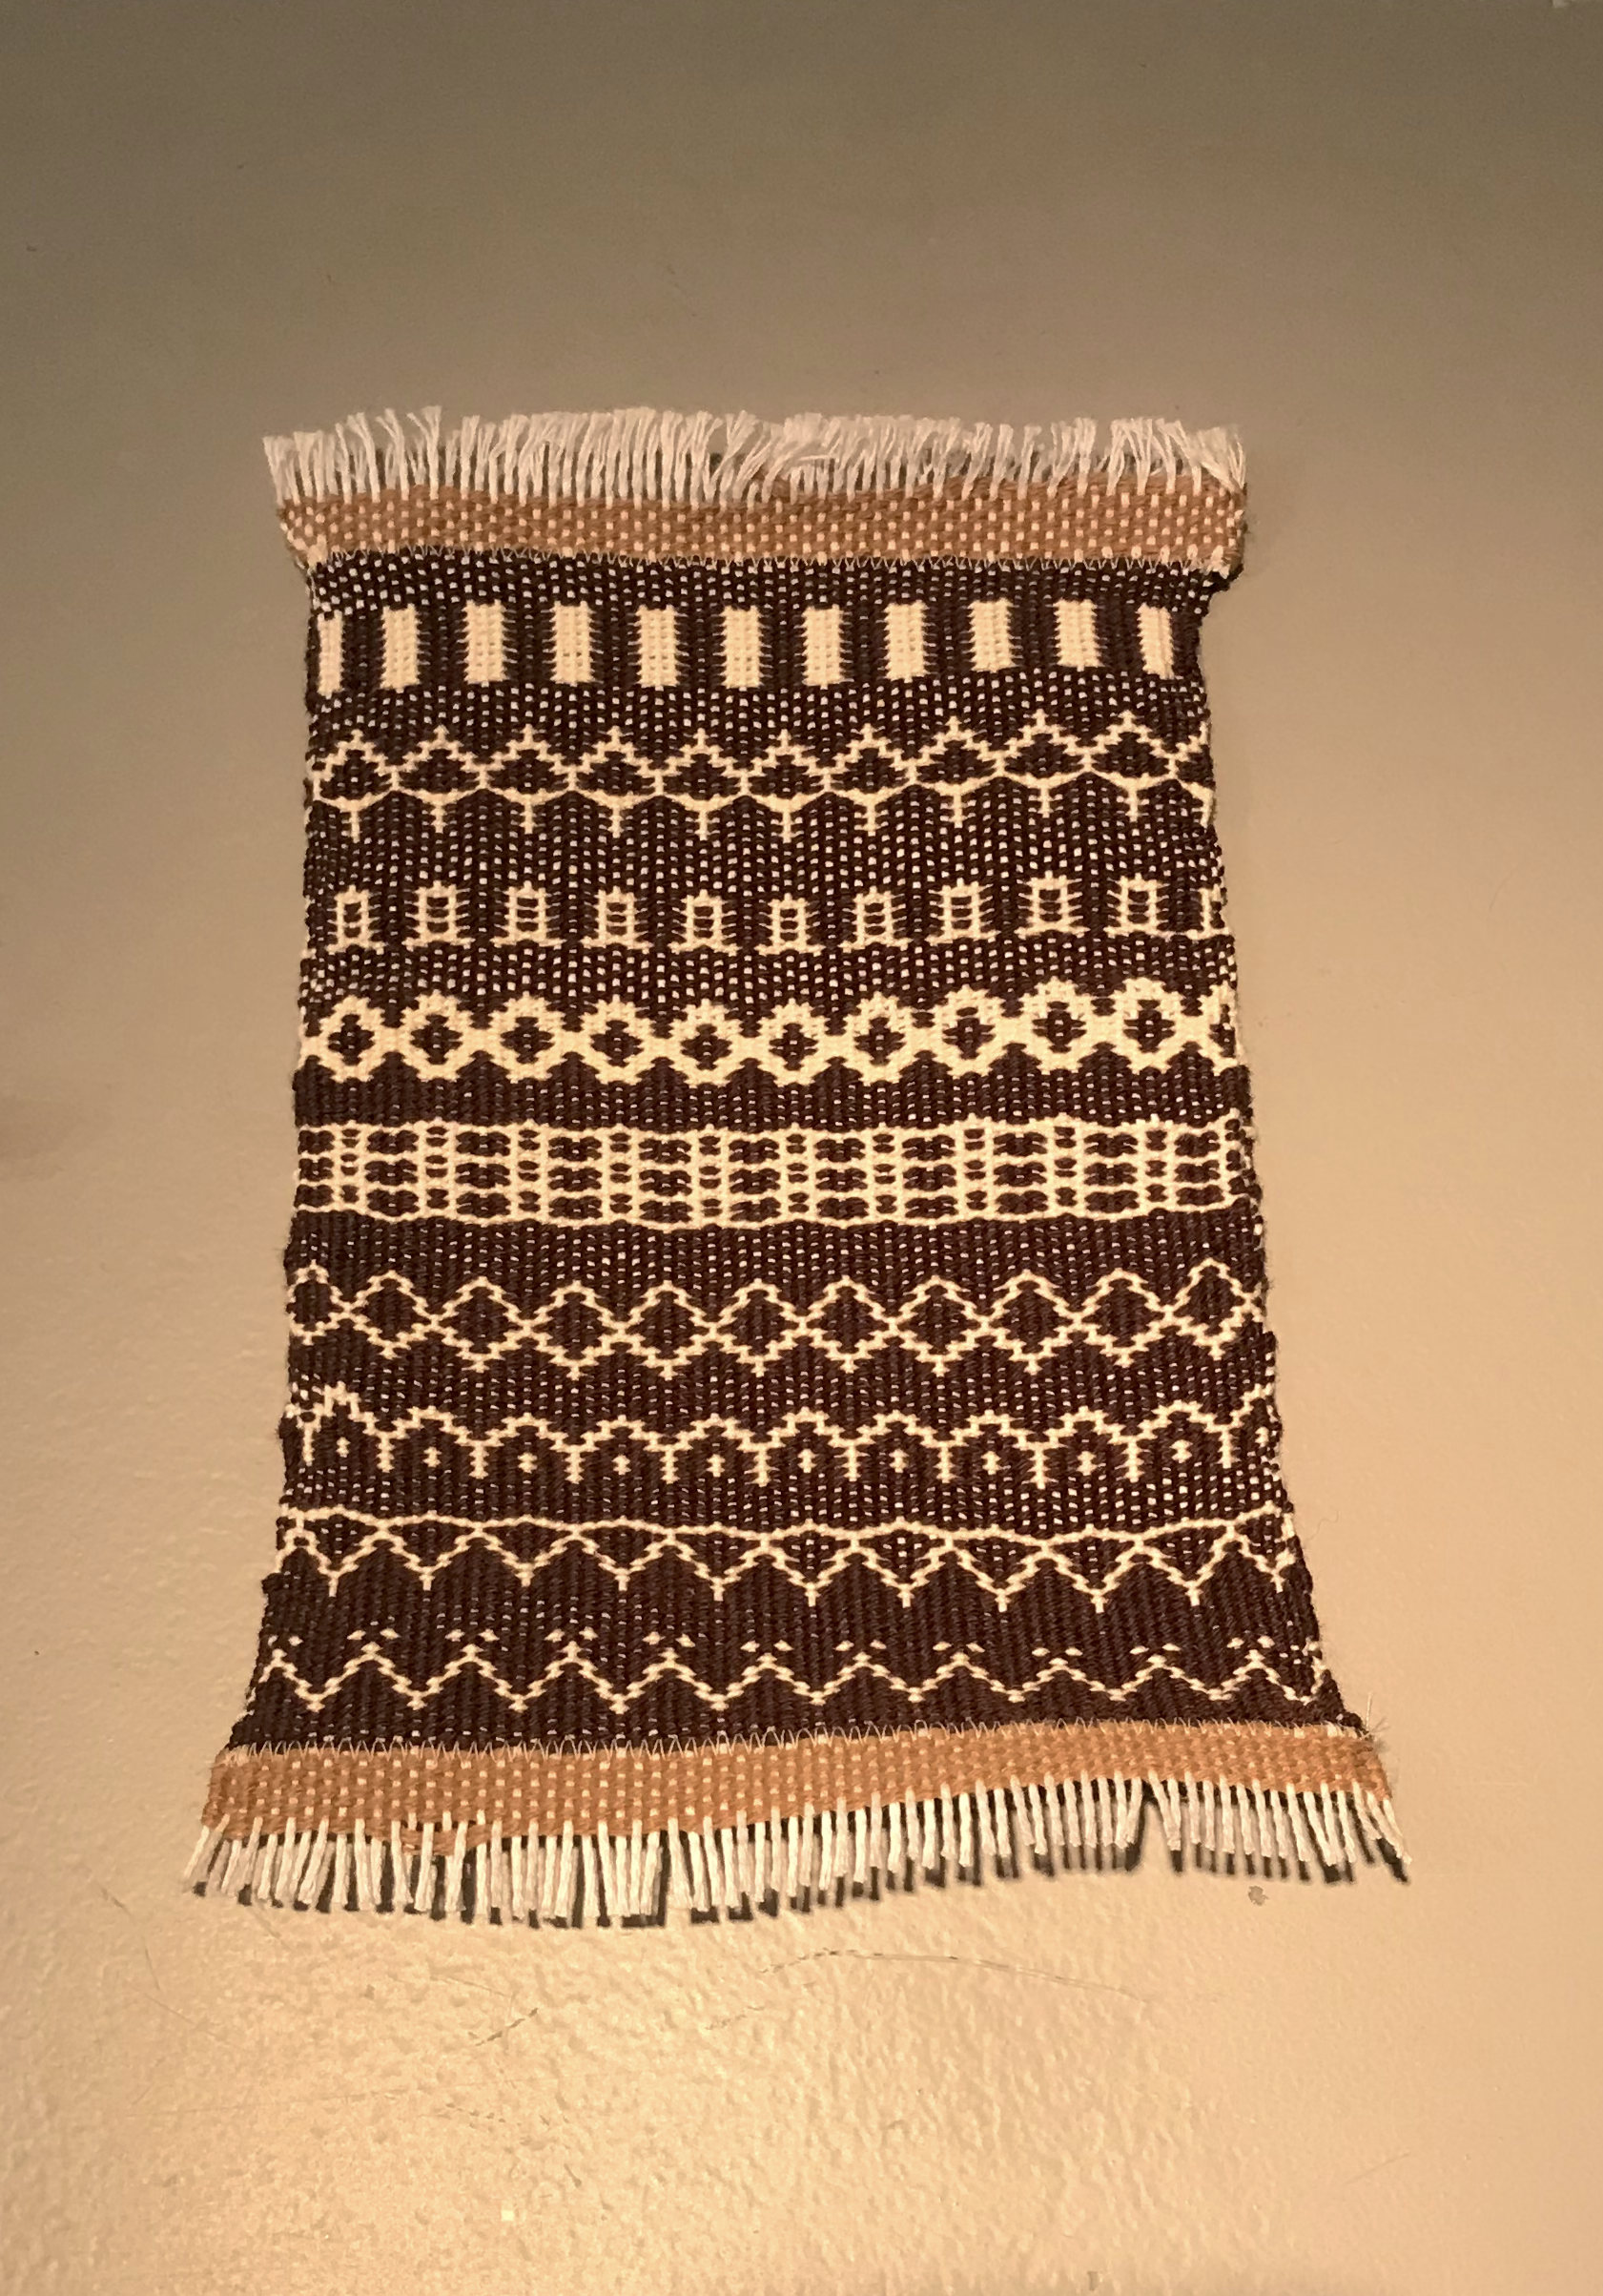 Hand-woven hobo code piece